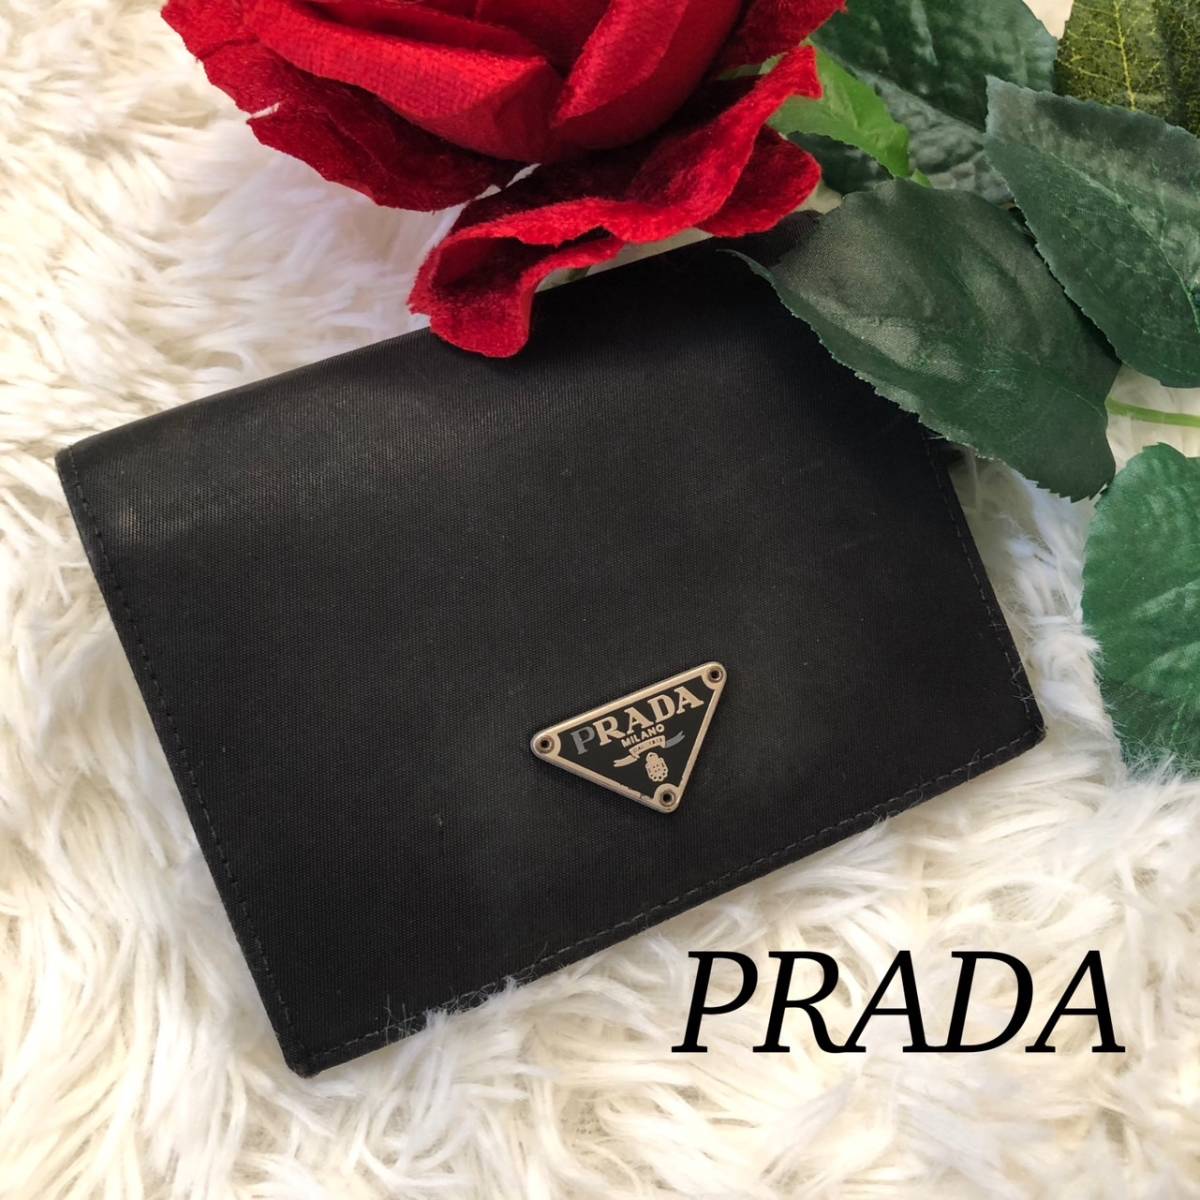 PRADA プラダ メンズ 財布 黒 ブラック 横12縦9.5マチ1.5 かっこいい 人気モデル 送料無料_画像1